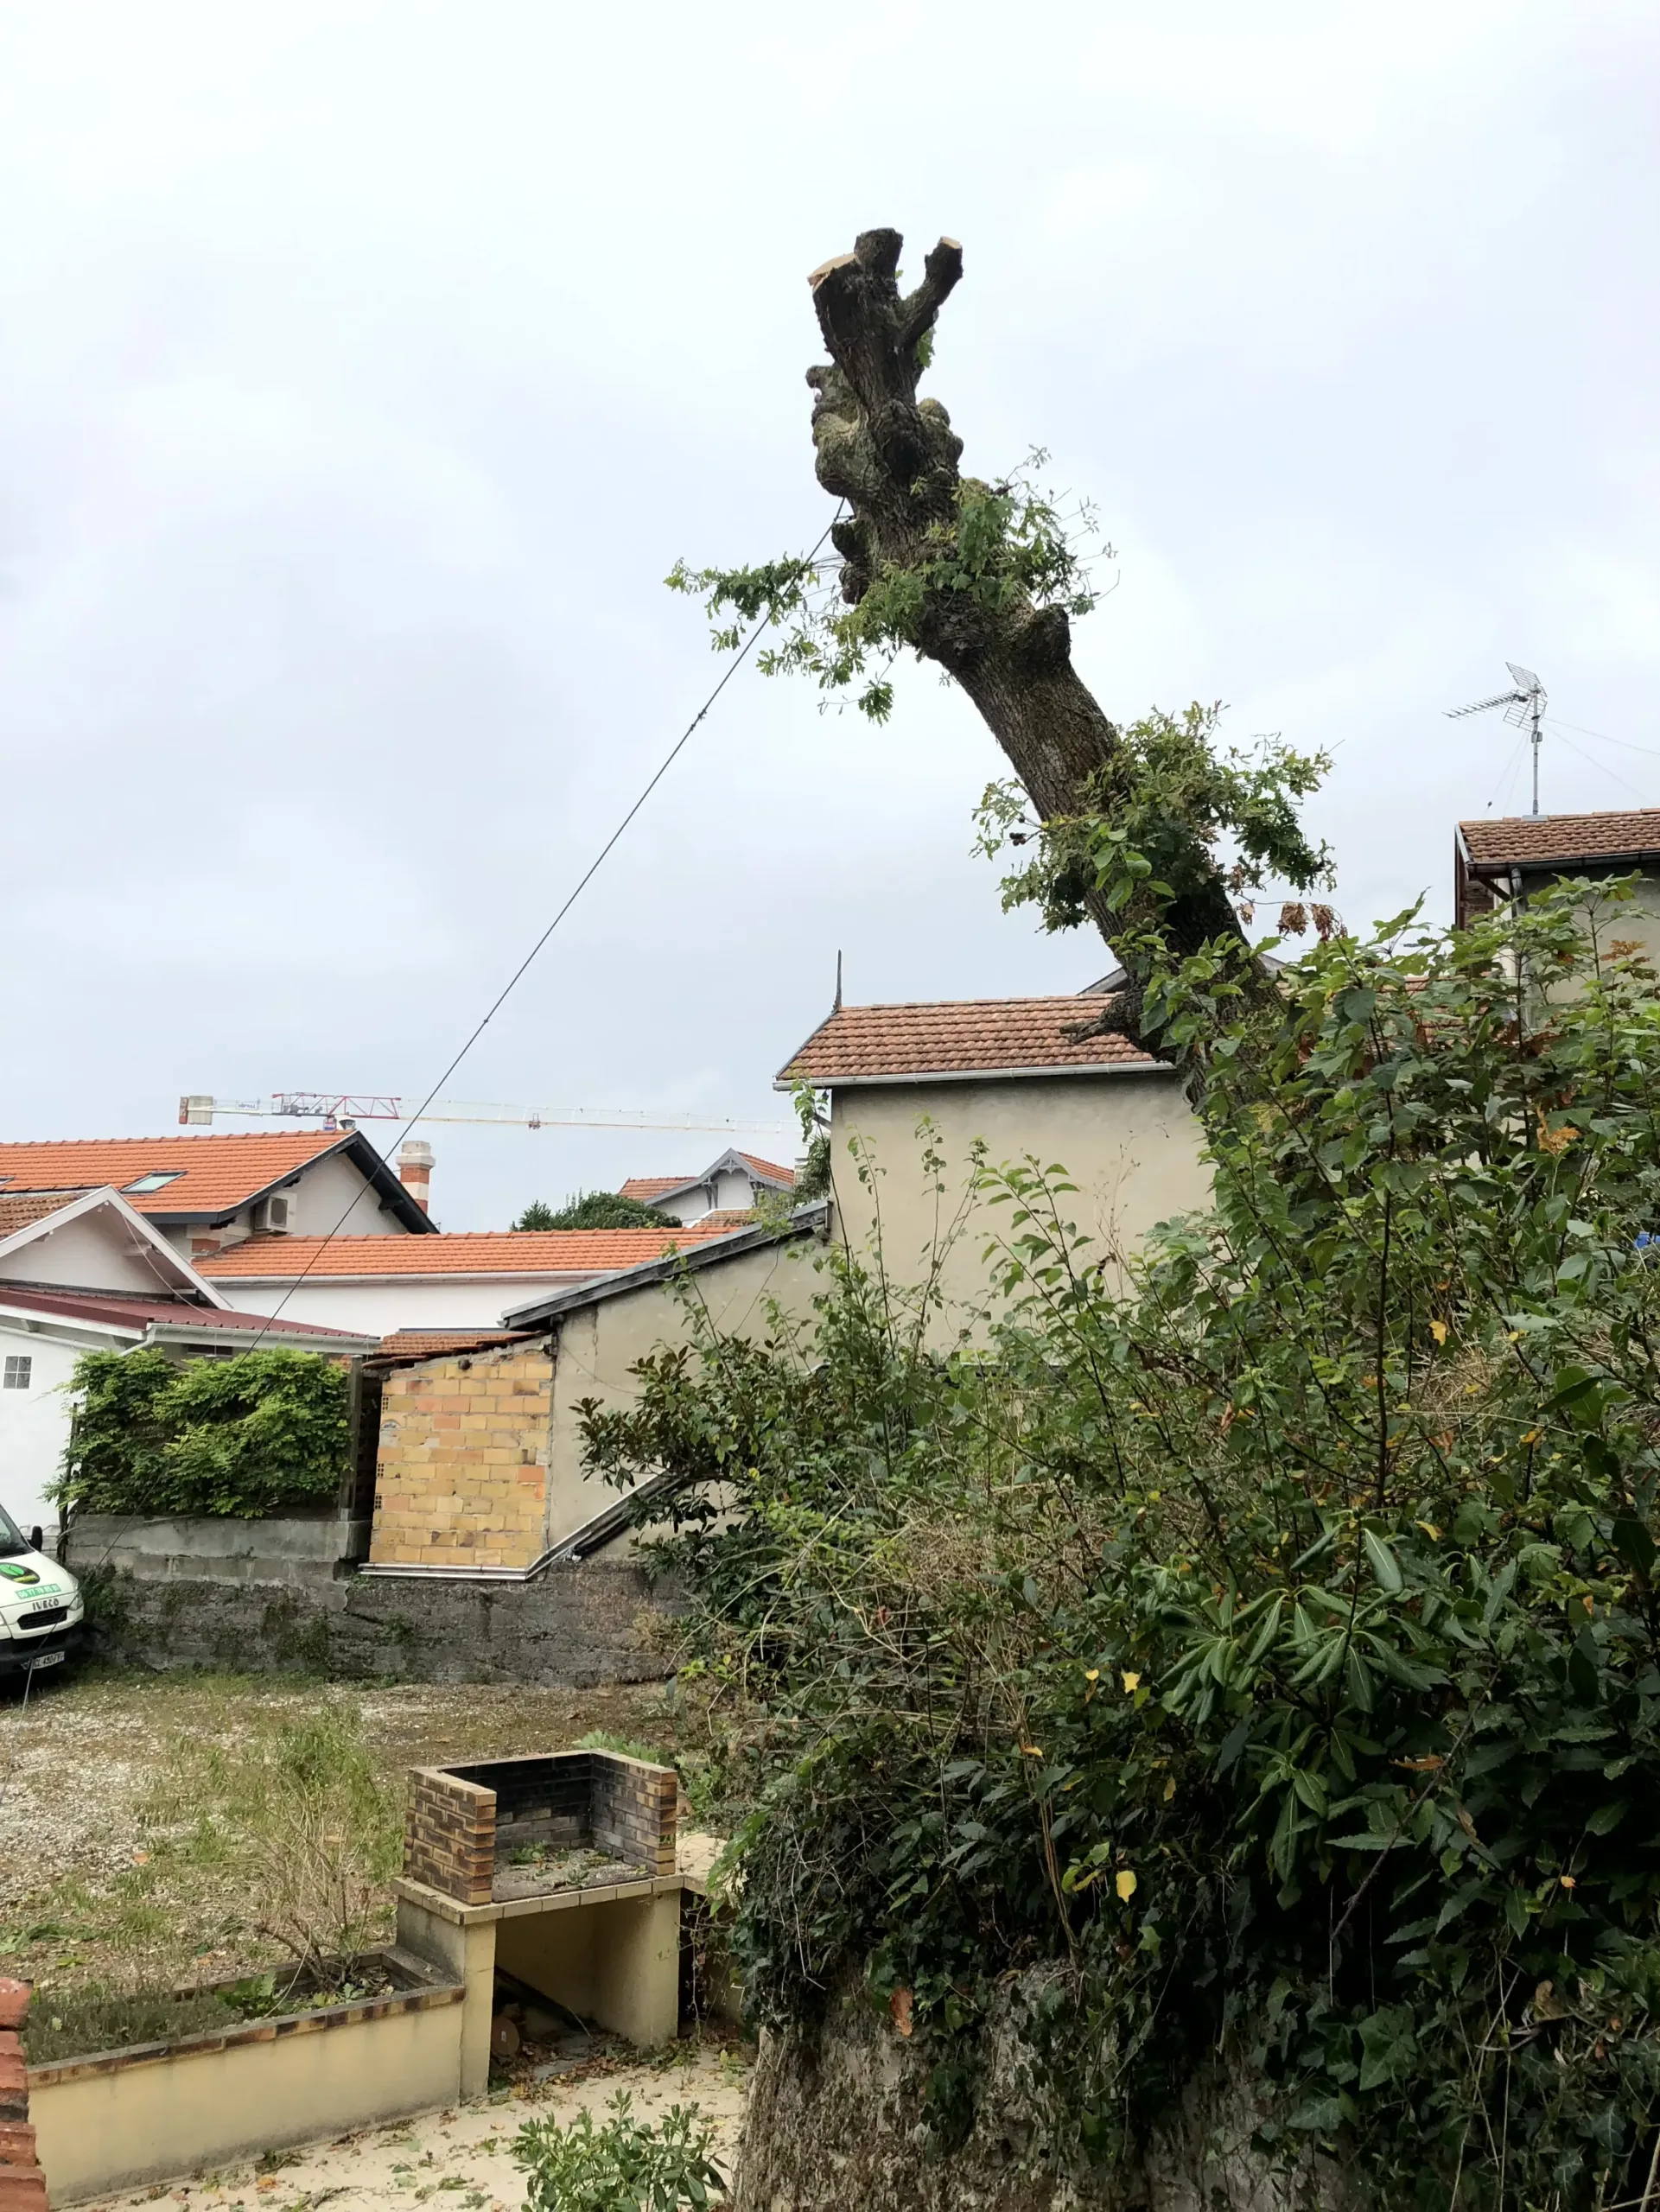 Bienvenue sur le site de Gironde élagage, entretien de jardins, élagage, abattage, taille de haies, évacuation des déchets verts en Gironde, Gradignan, Cestas..